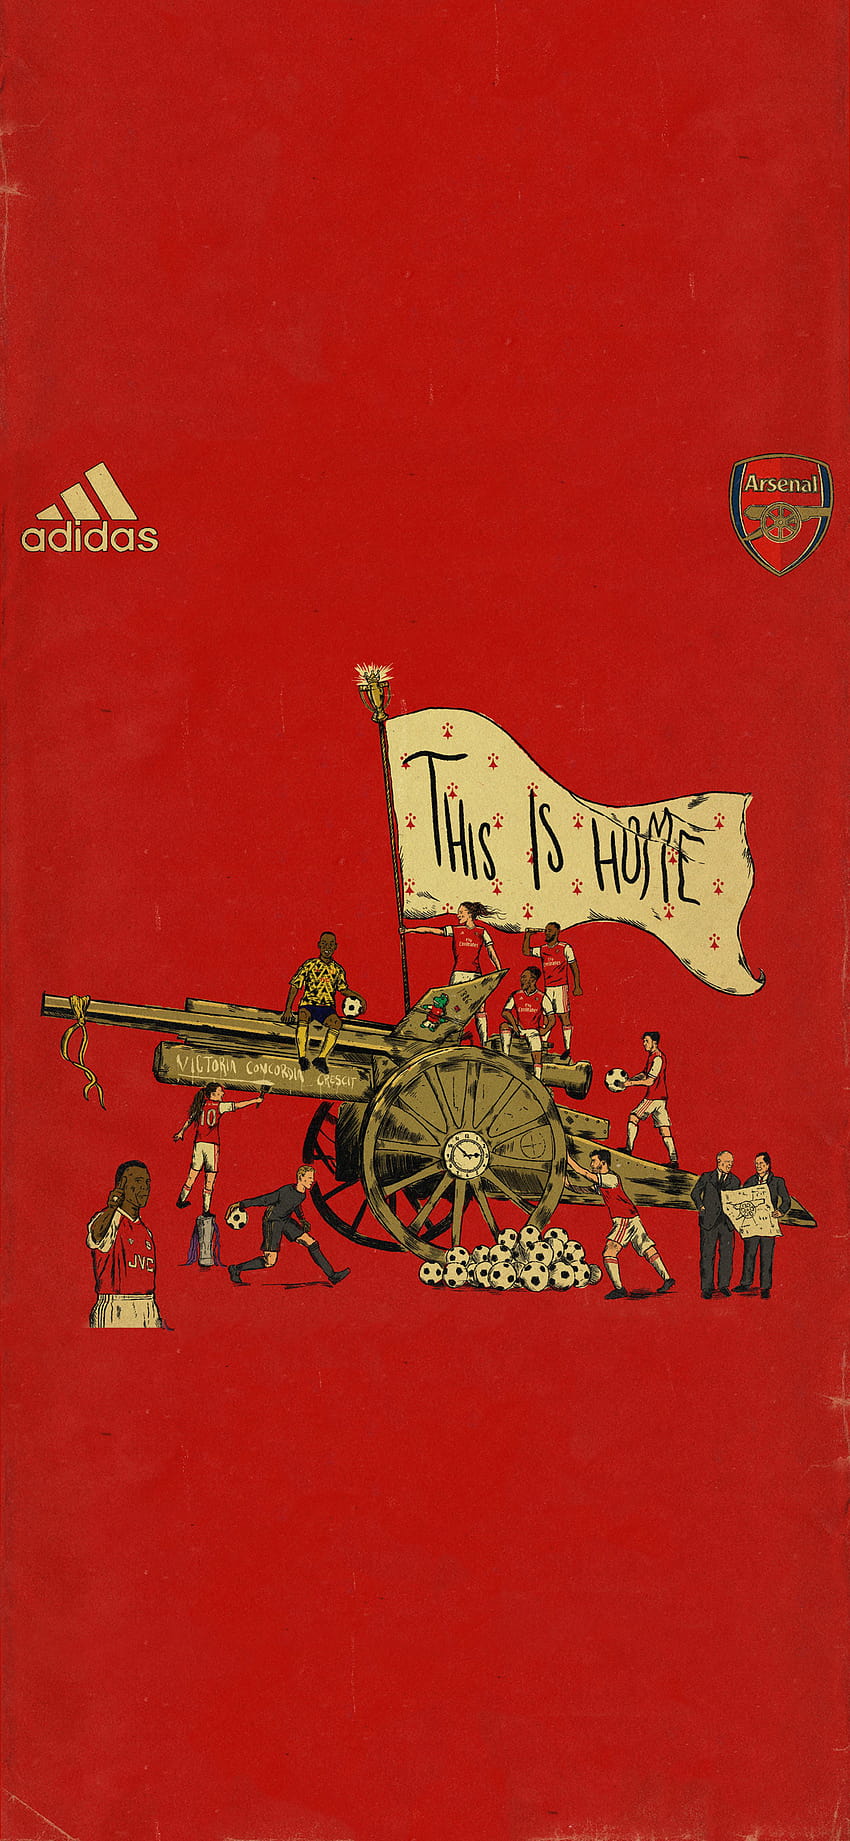 Arsenal 2019 Adidas, arsenal adidas HD phone wallpaper